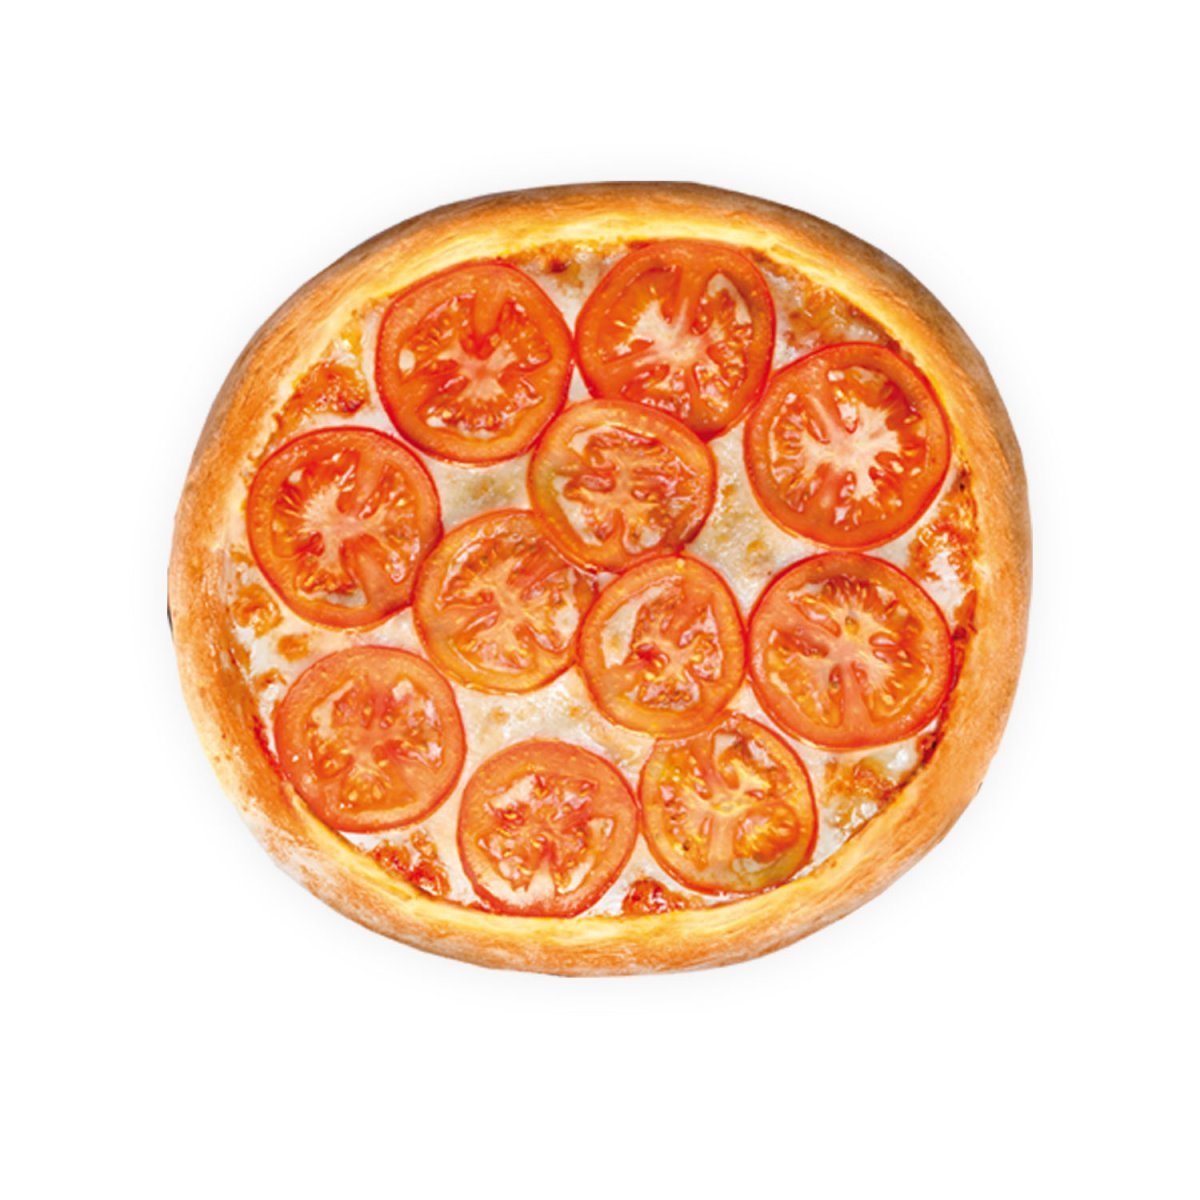 теста для пиццы и начинка фото 106